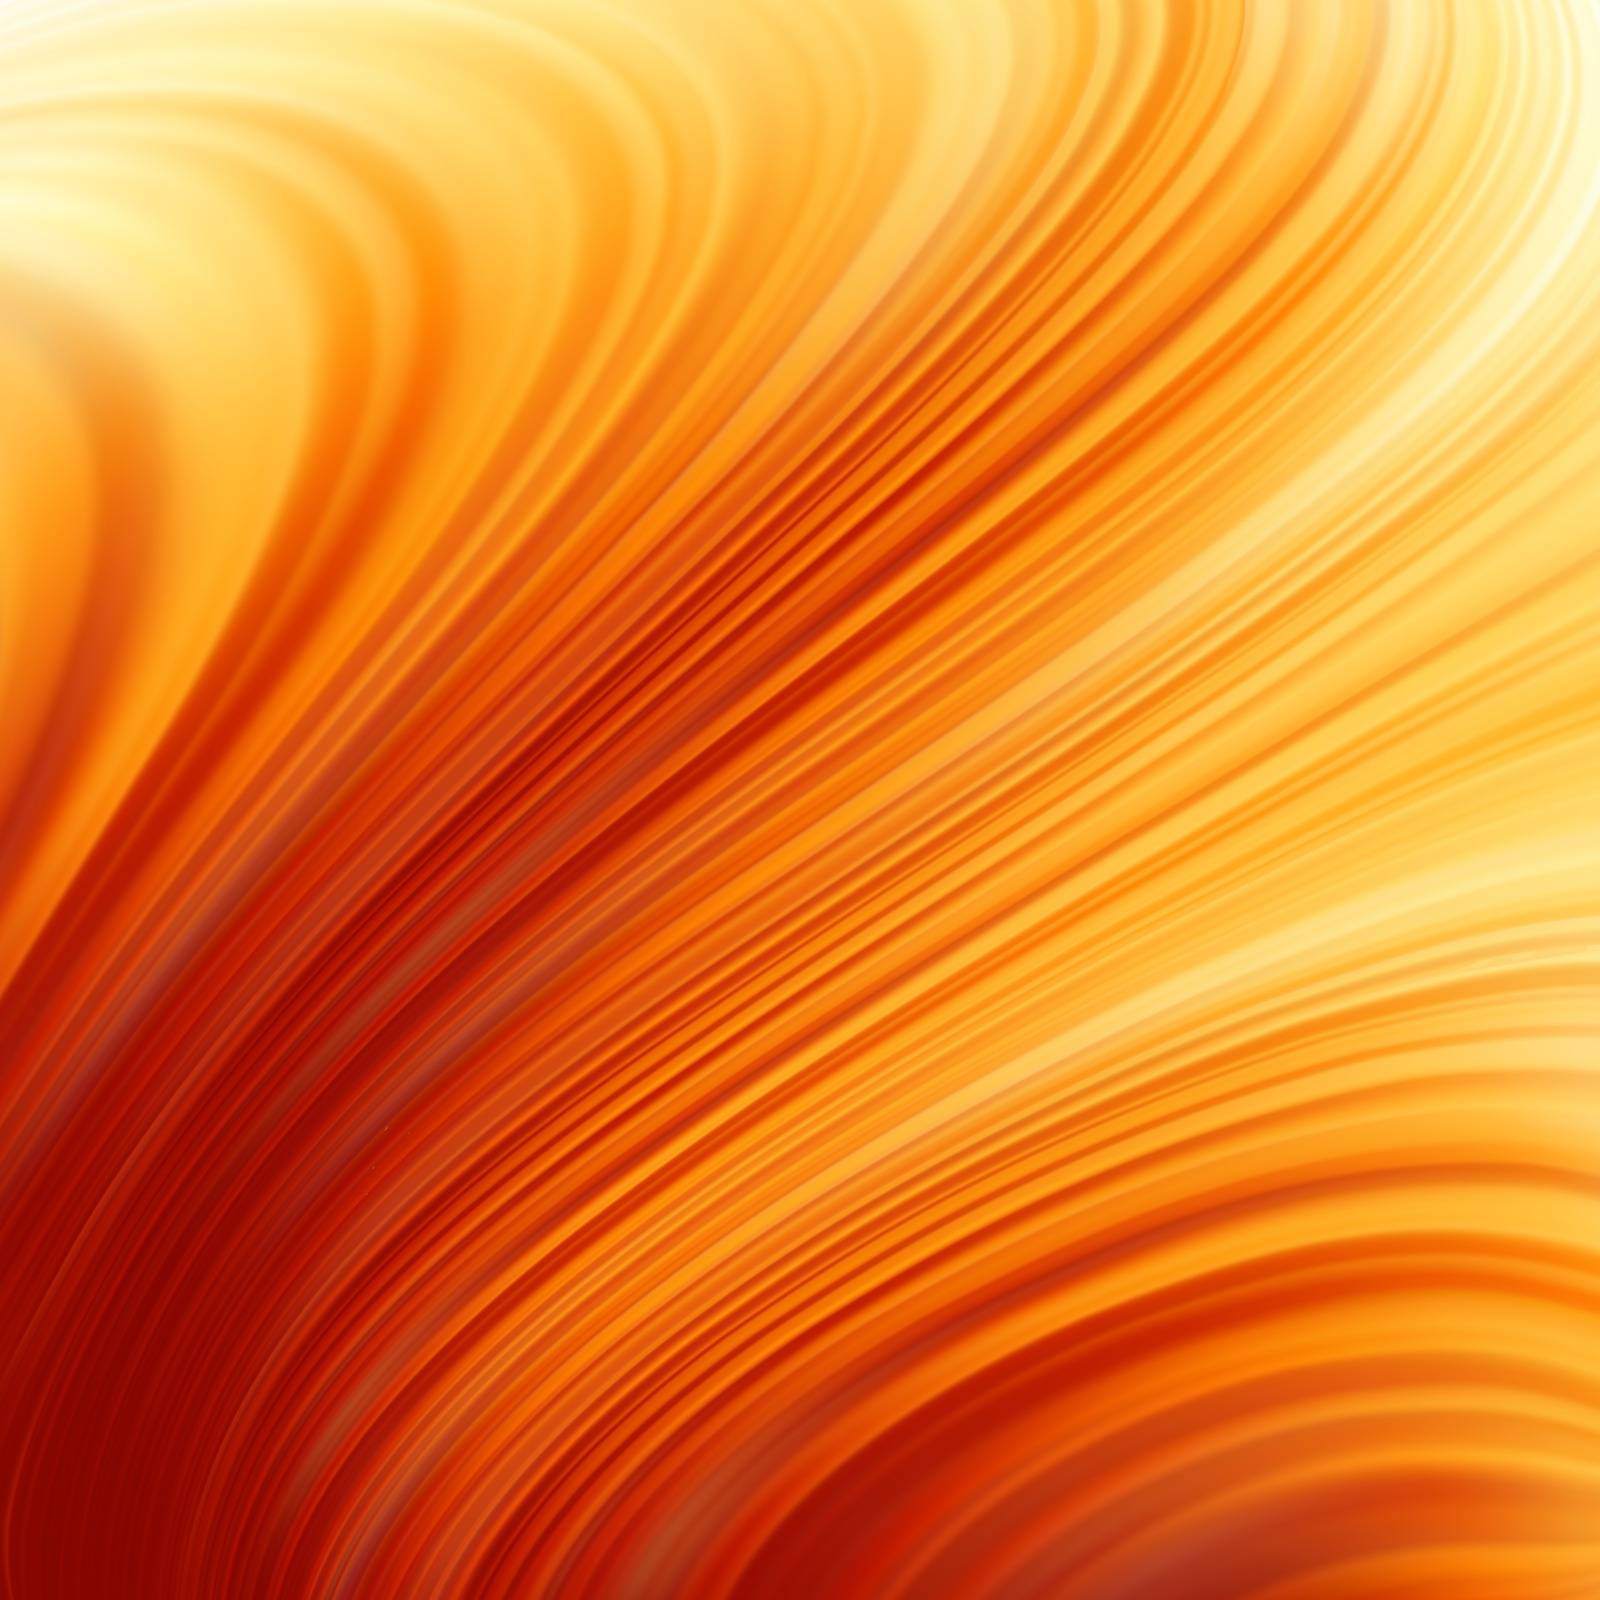 Glow Twist with fire flow. EPS 8 by Petrov_Vladimir